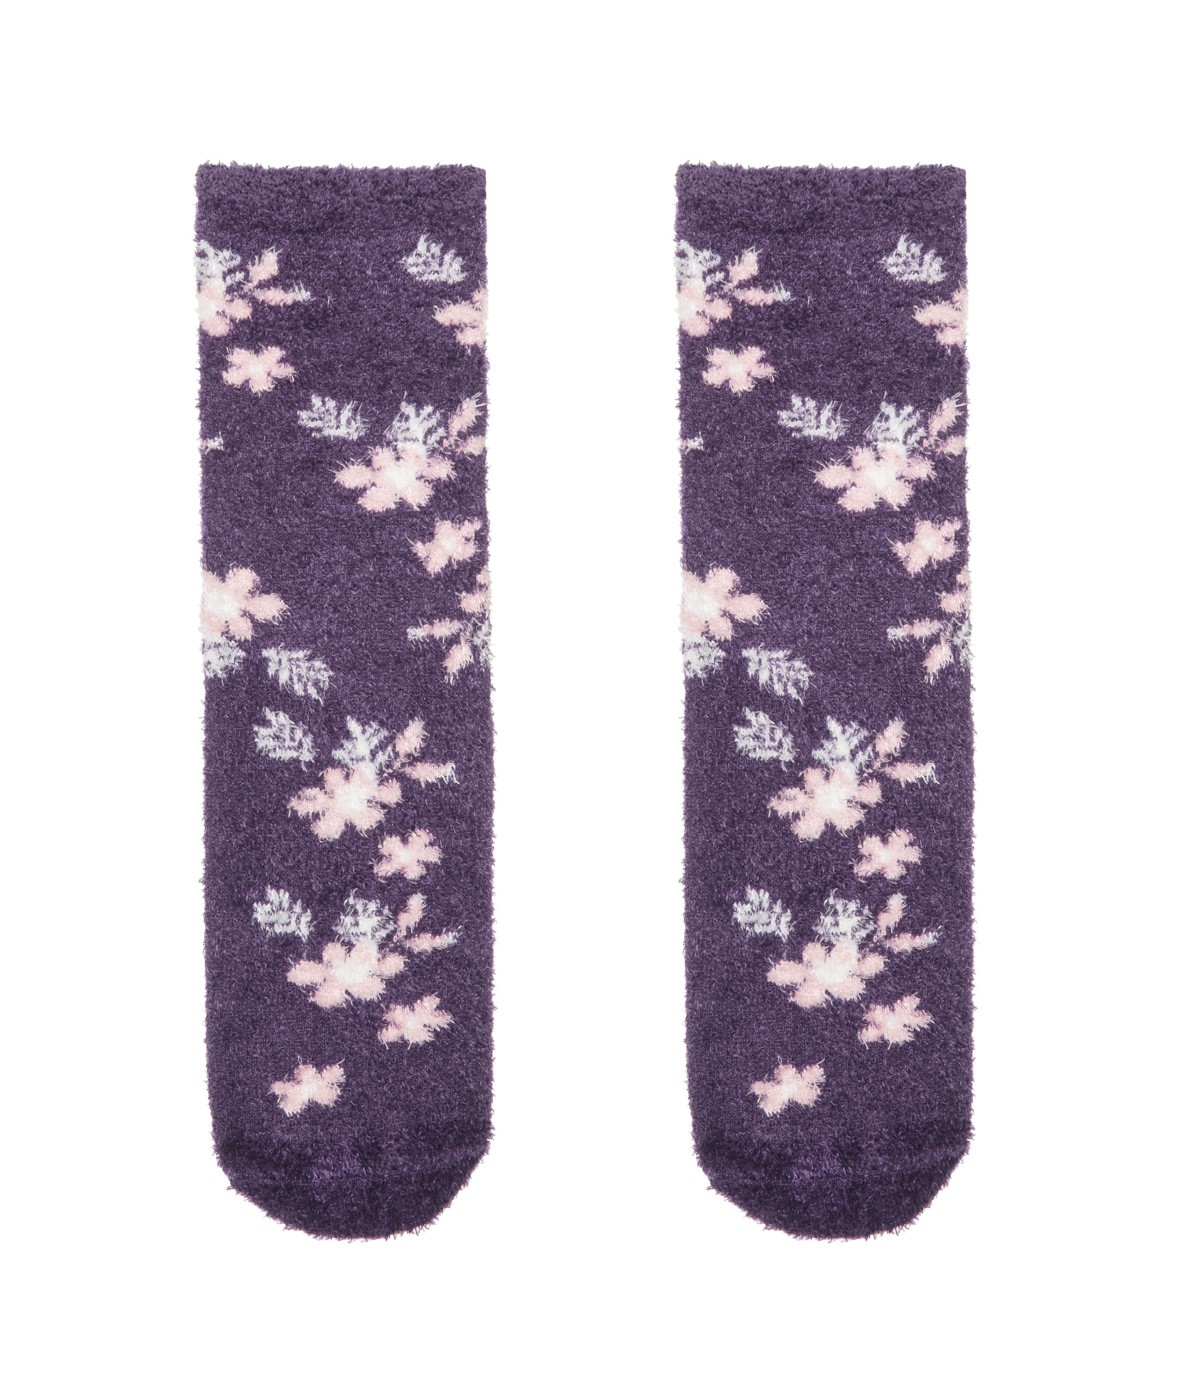 Violet Socks